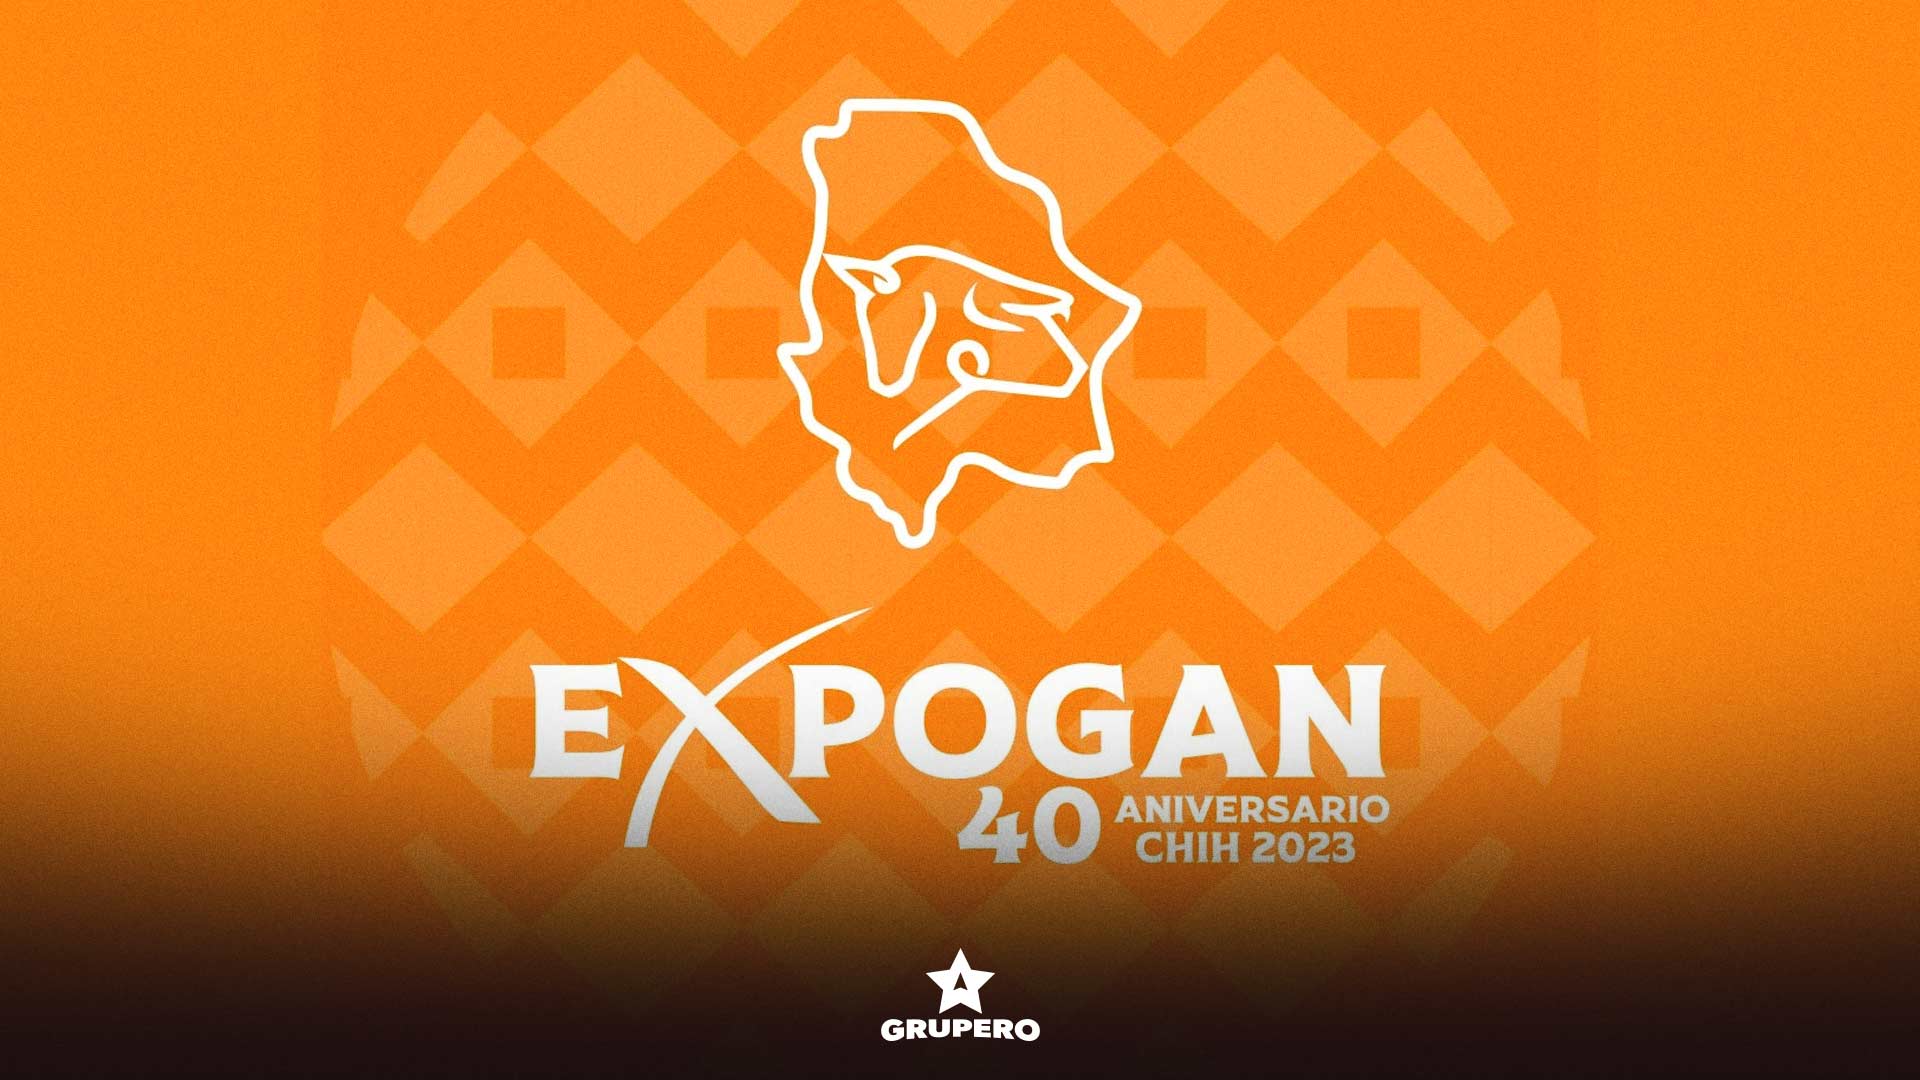 Expo Ganadera EXPOGAN 2023